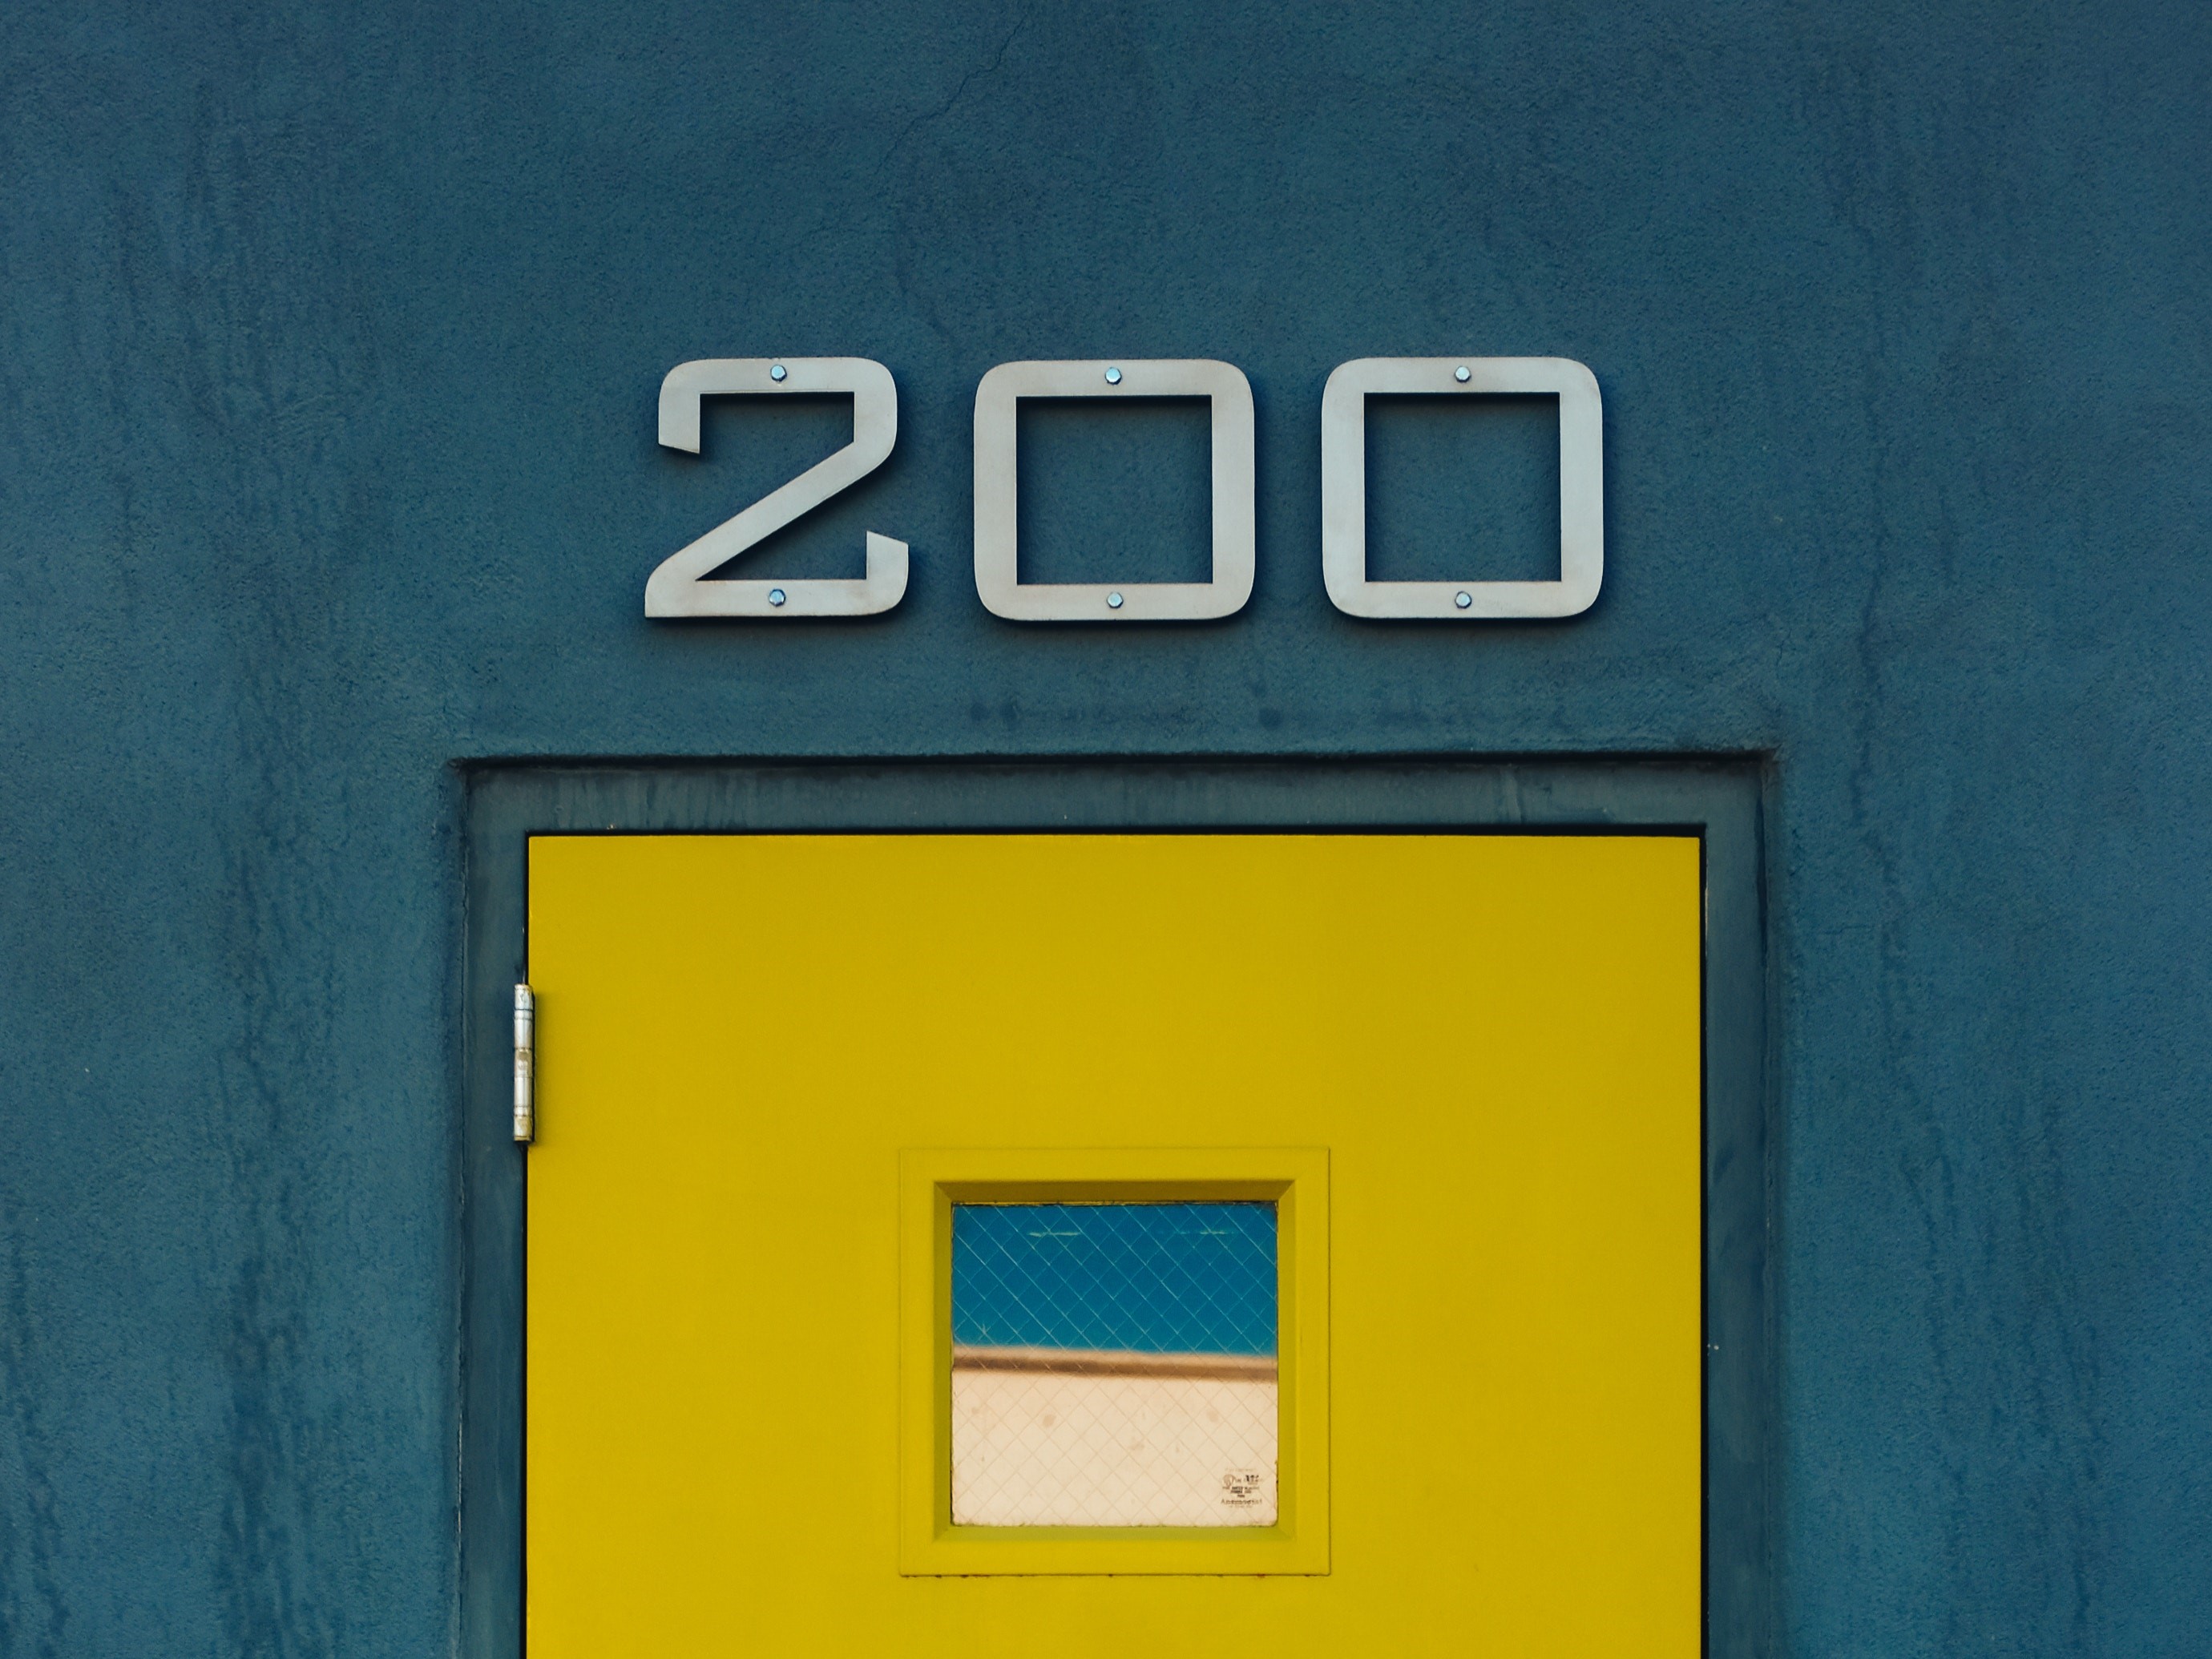 200 sign on door